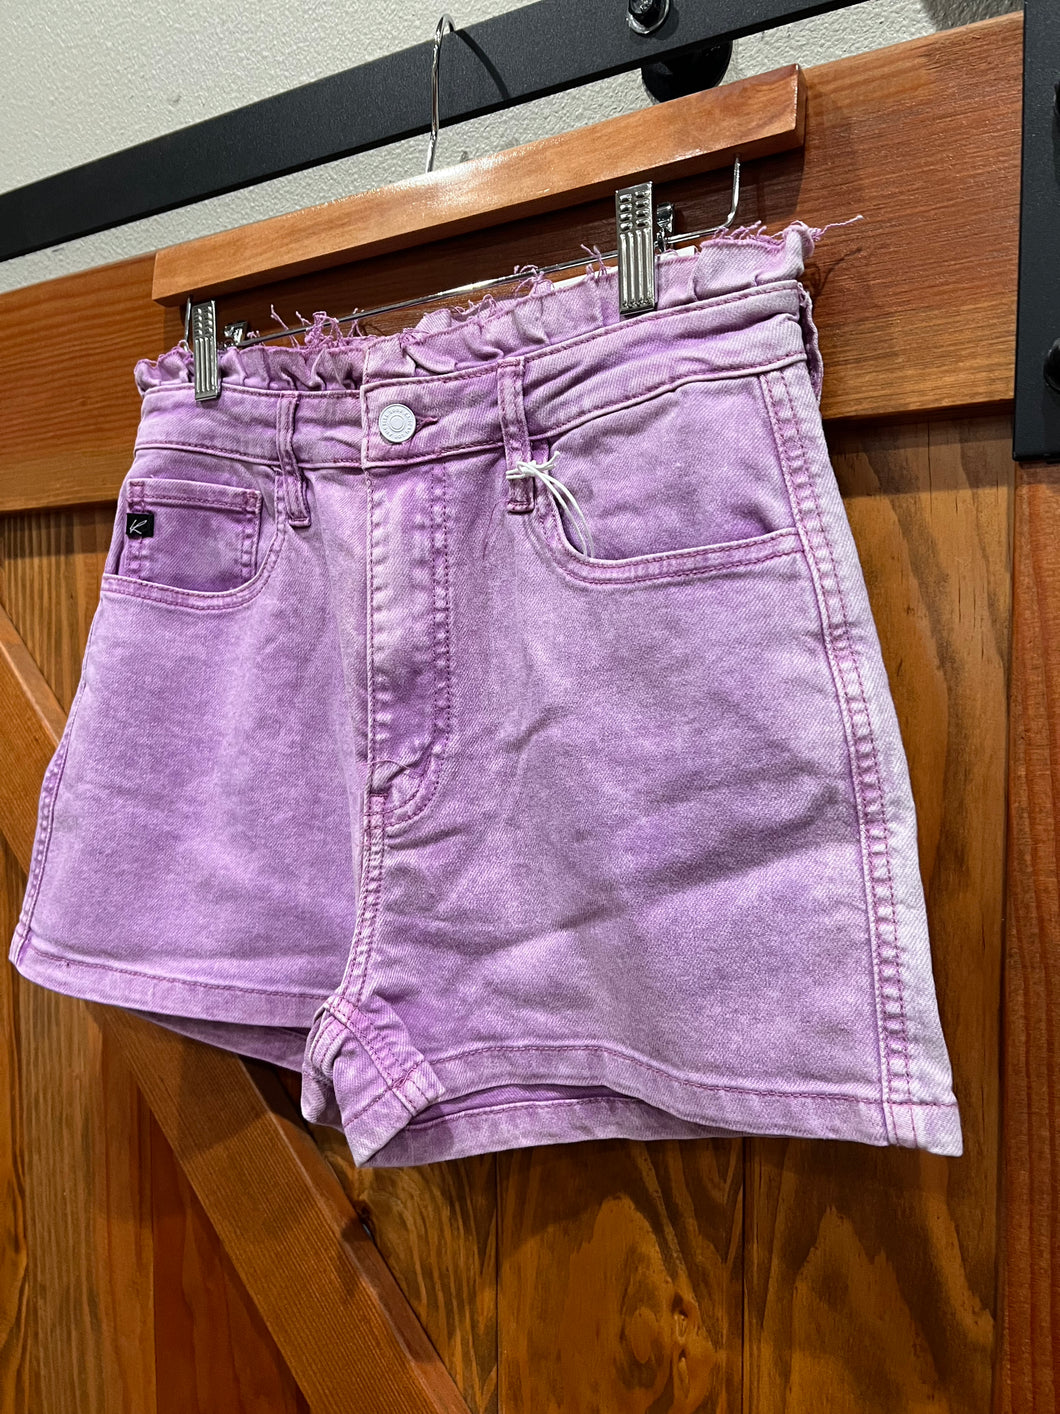 Lilac Shorts